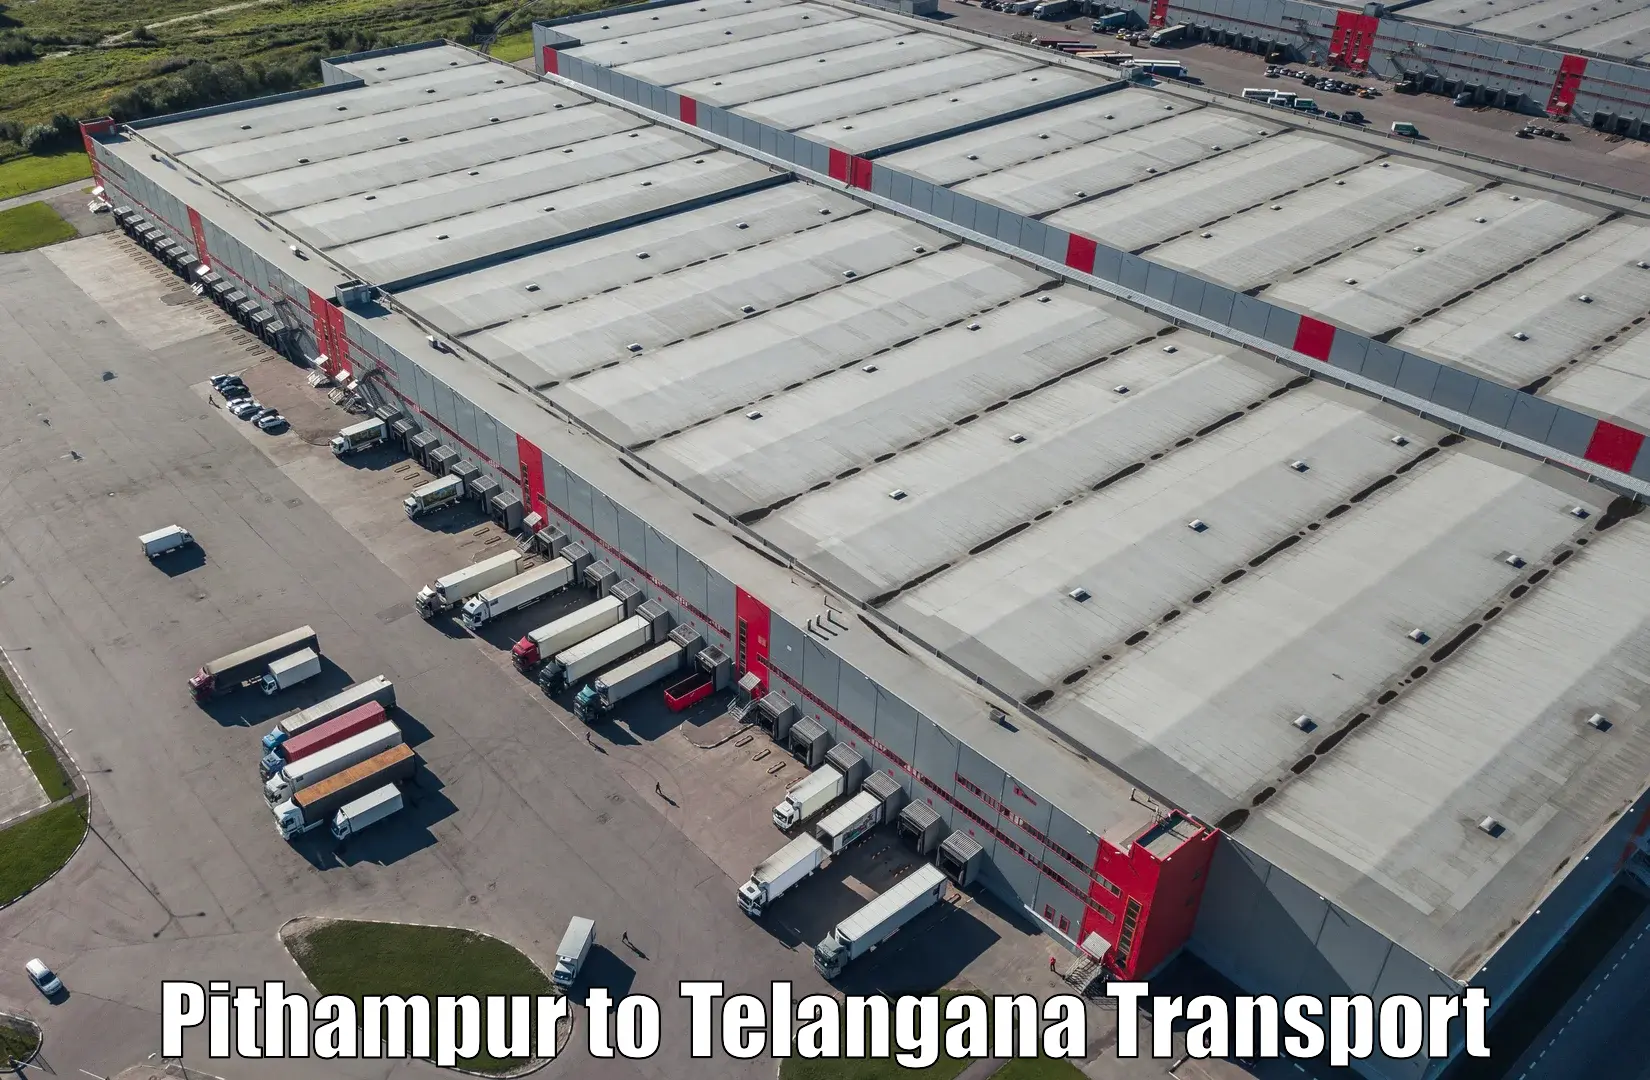 Goods transport services Pithampur to Kakeshwaram